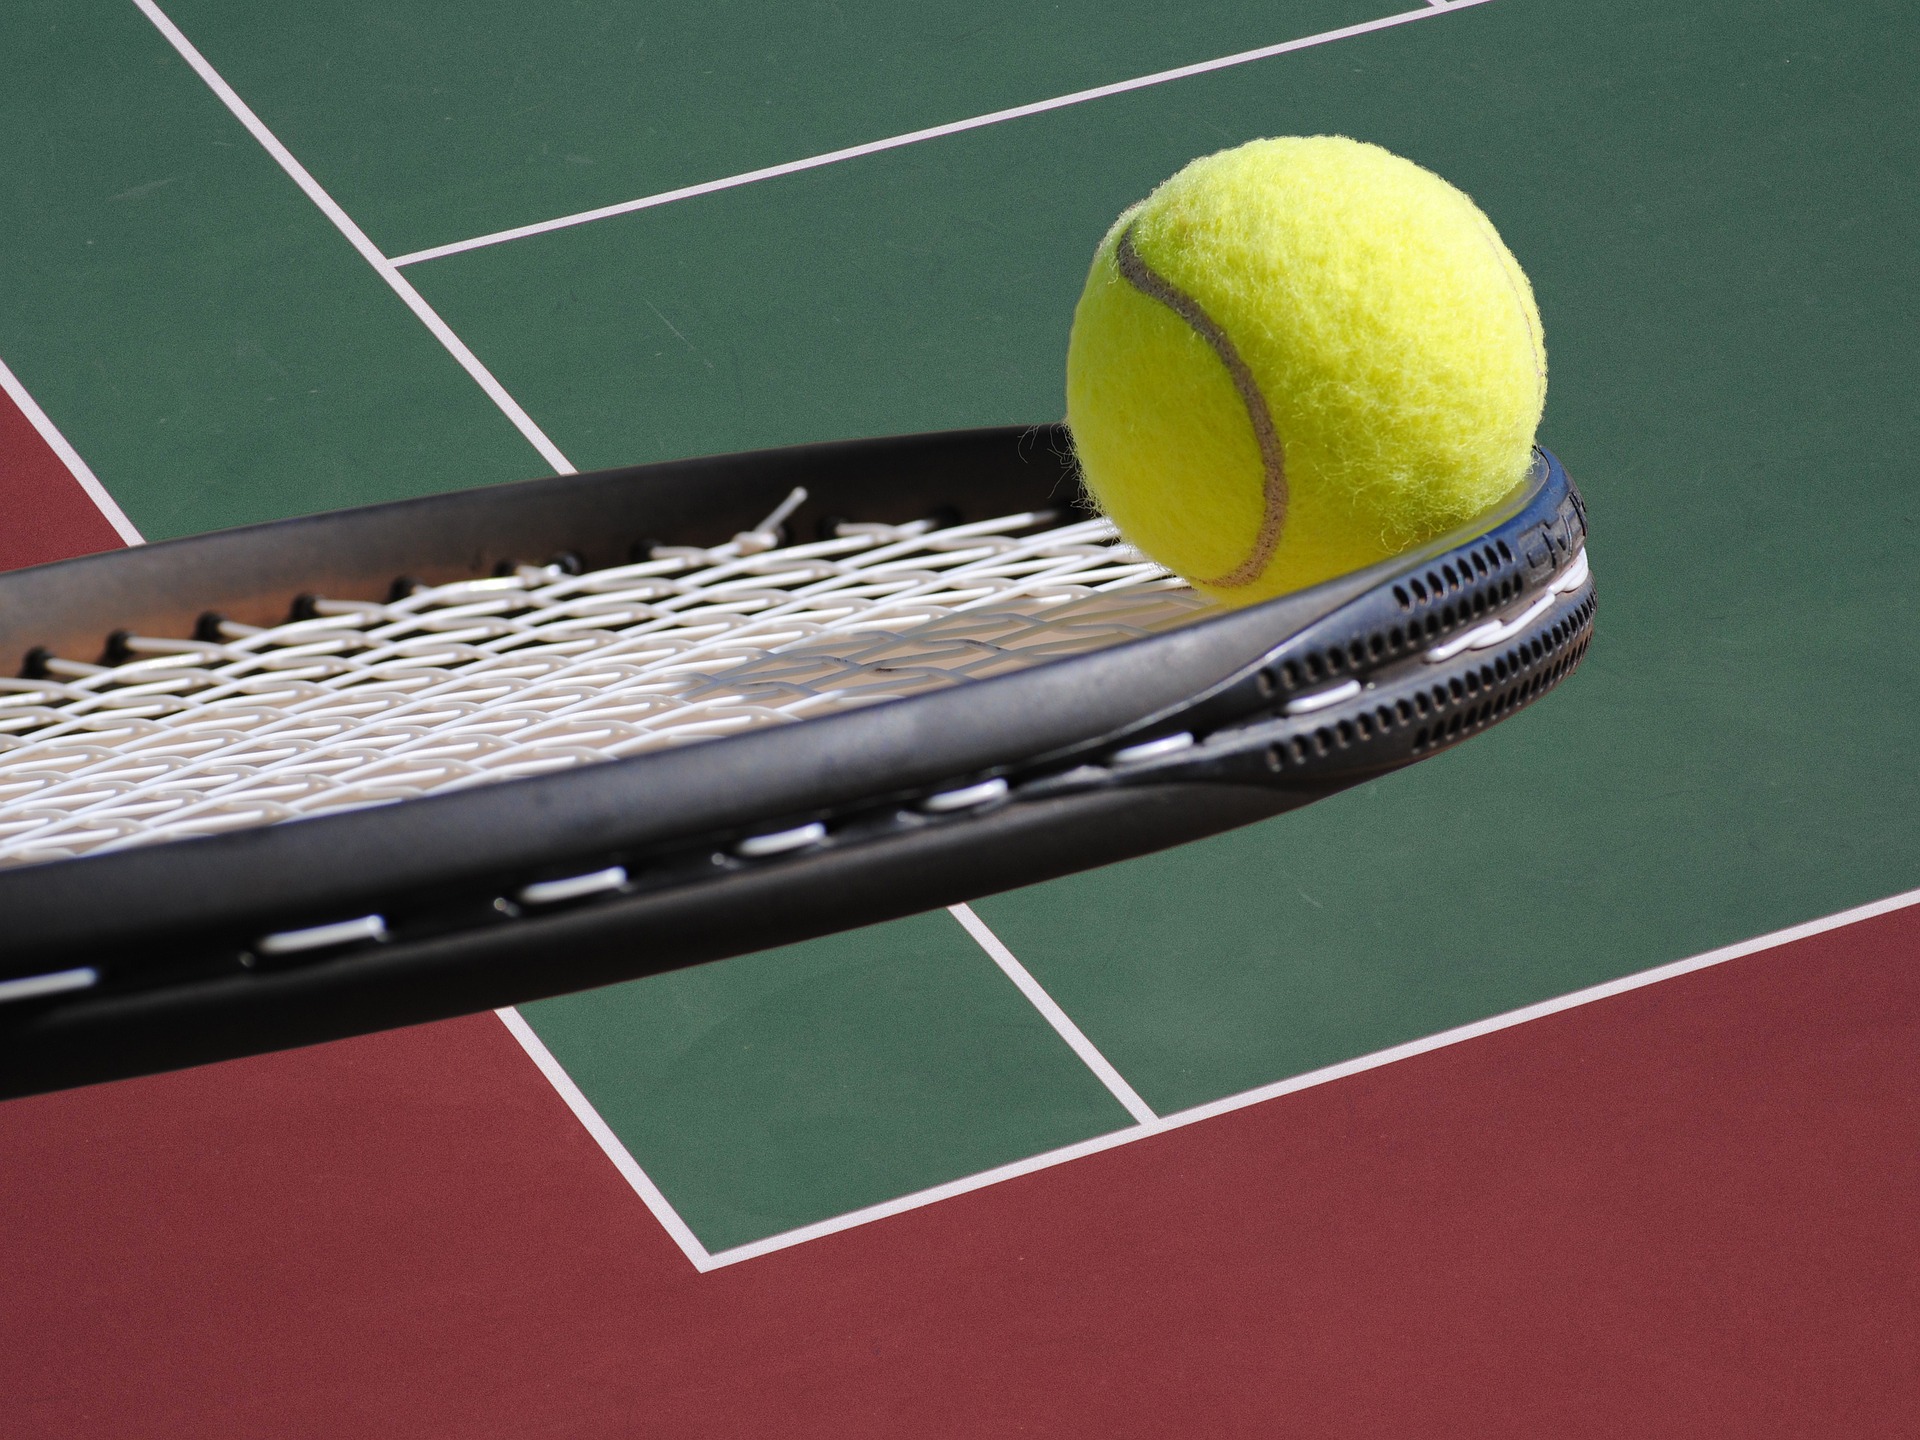 Principais torneios de tênis ao redor do mundo￼ - Blog do rankingdetenis.com